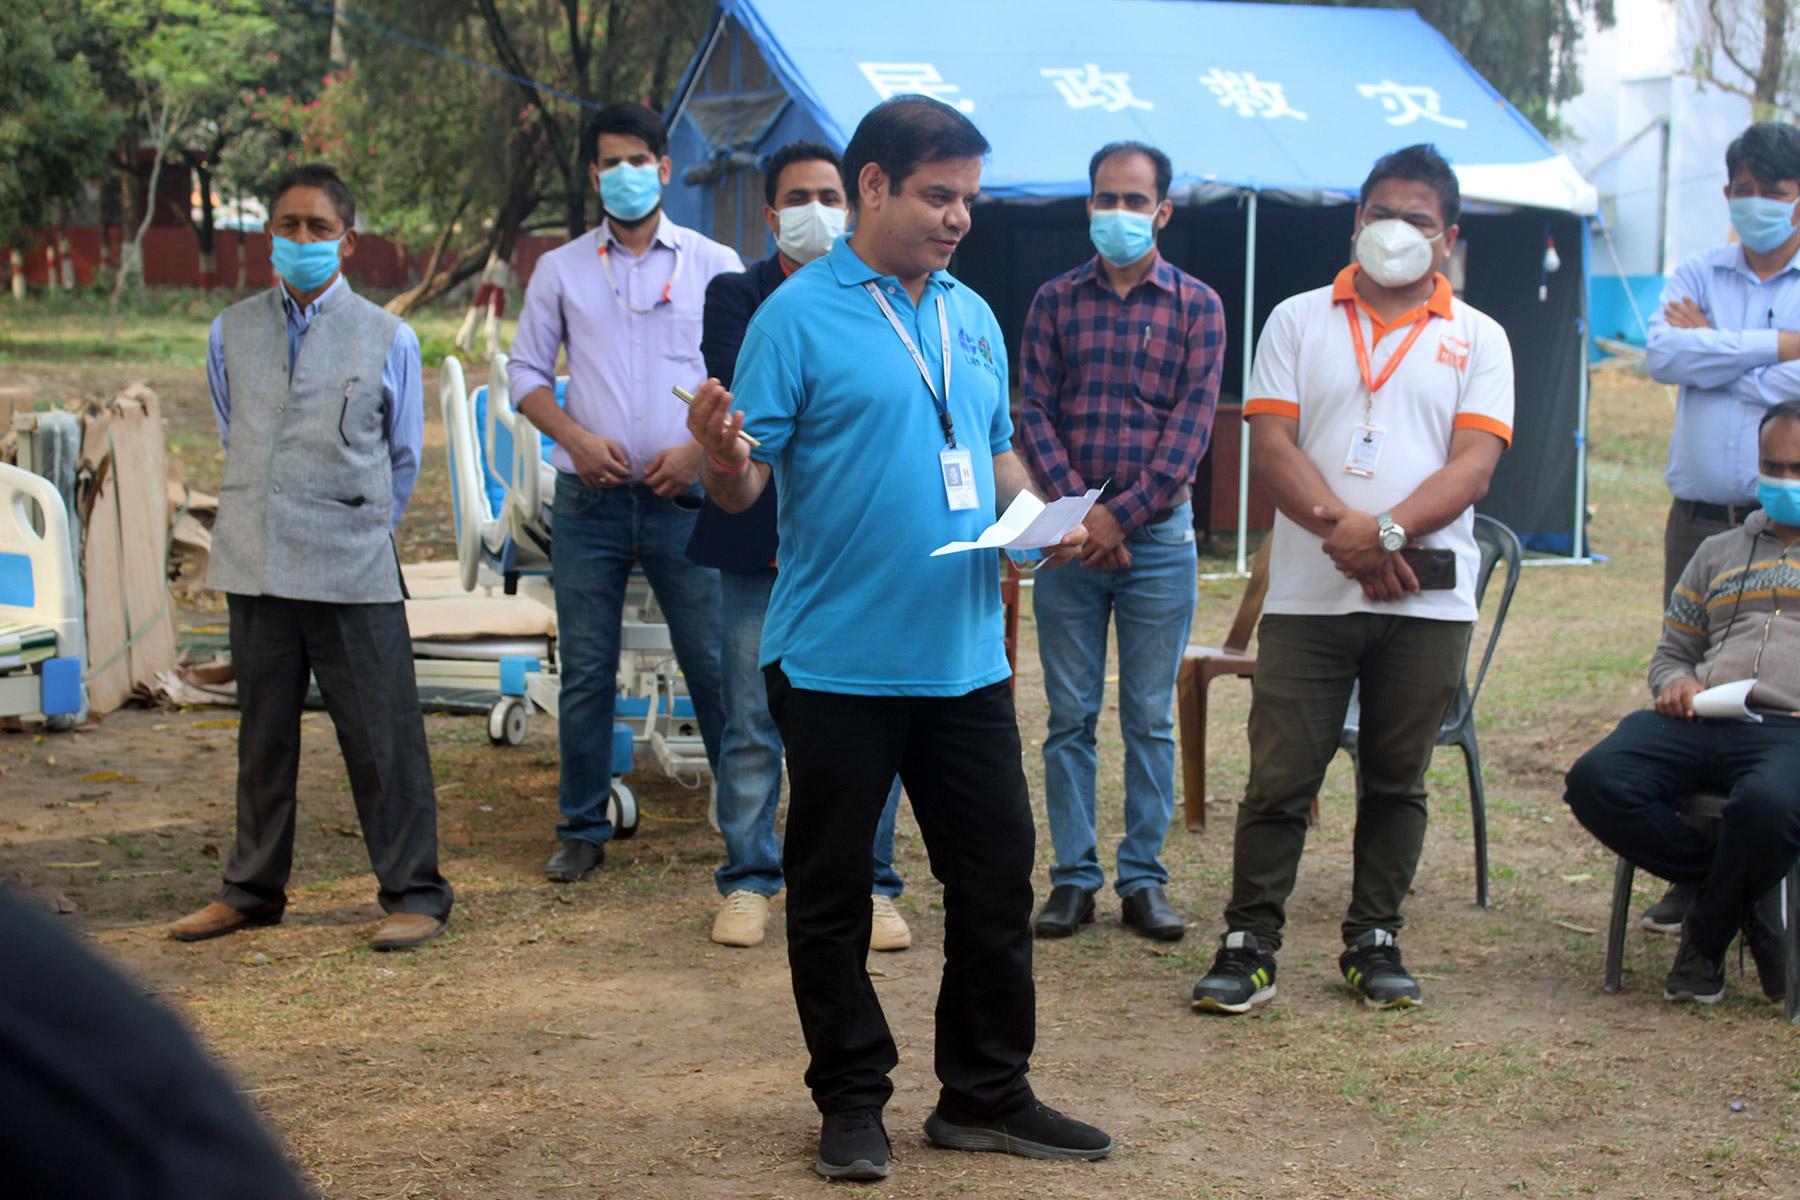 Informationsveranstaltung für die lokale Gemeinschaft über die Reaktion des LWB auf COVID-19 während einer Übergabe von medizinischer Ausrüstung im Krankenhaus in Morang, Nepal. Foto: LWB Nepal